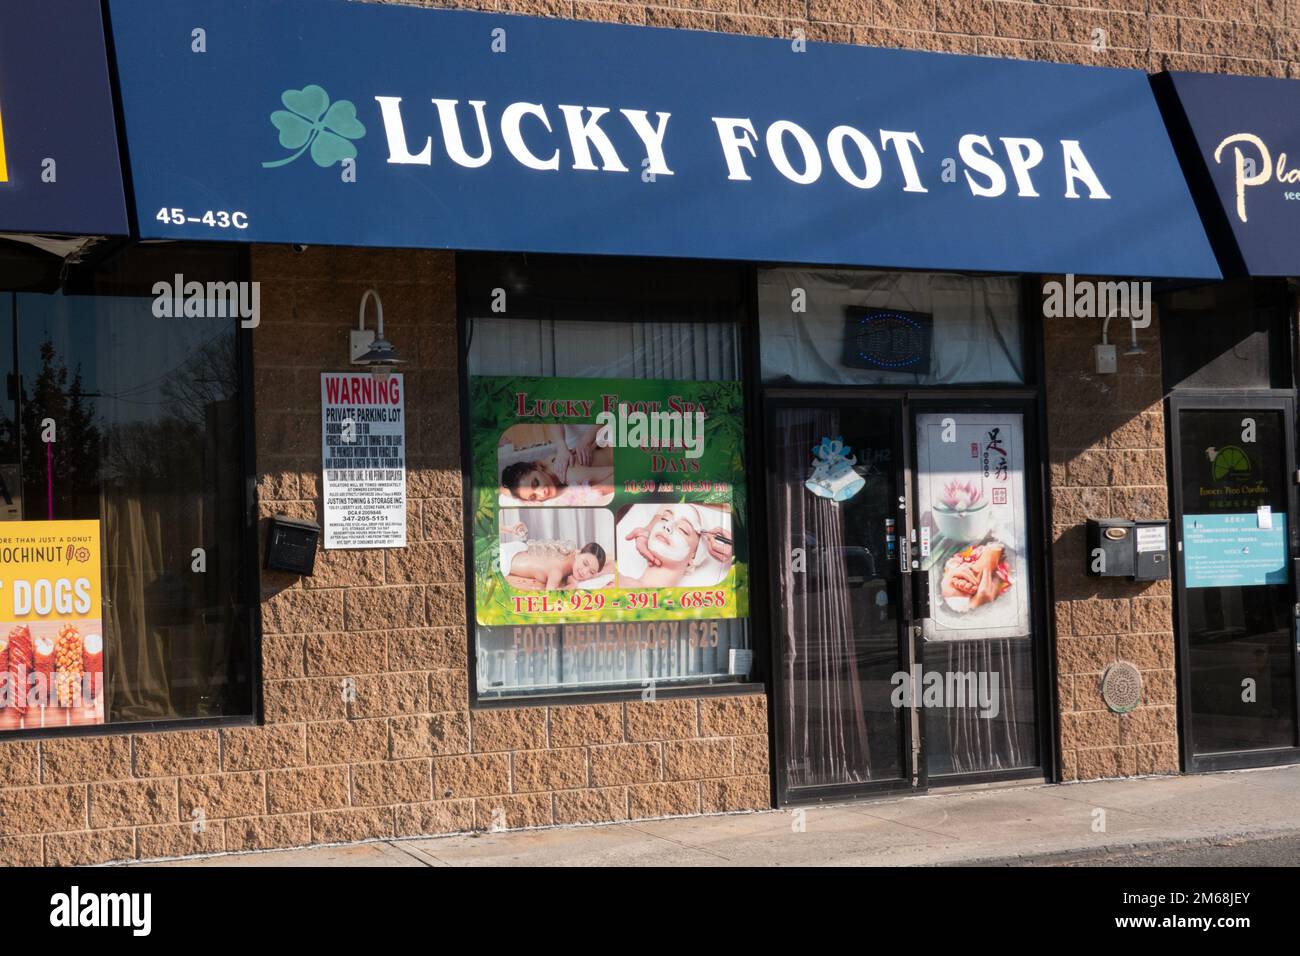 Das Lucky Foot Spa am Bell Boulevard in Bayside, Queens, bietet Fuß- und Ganzkörpermassagen sowie Reflexzonenmassagen. Stockfoto